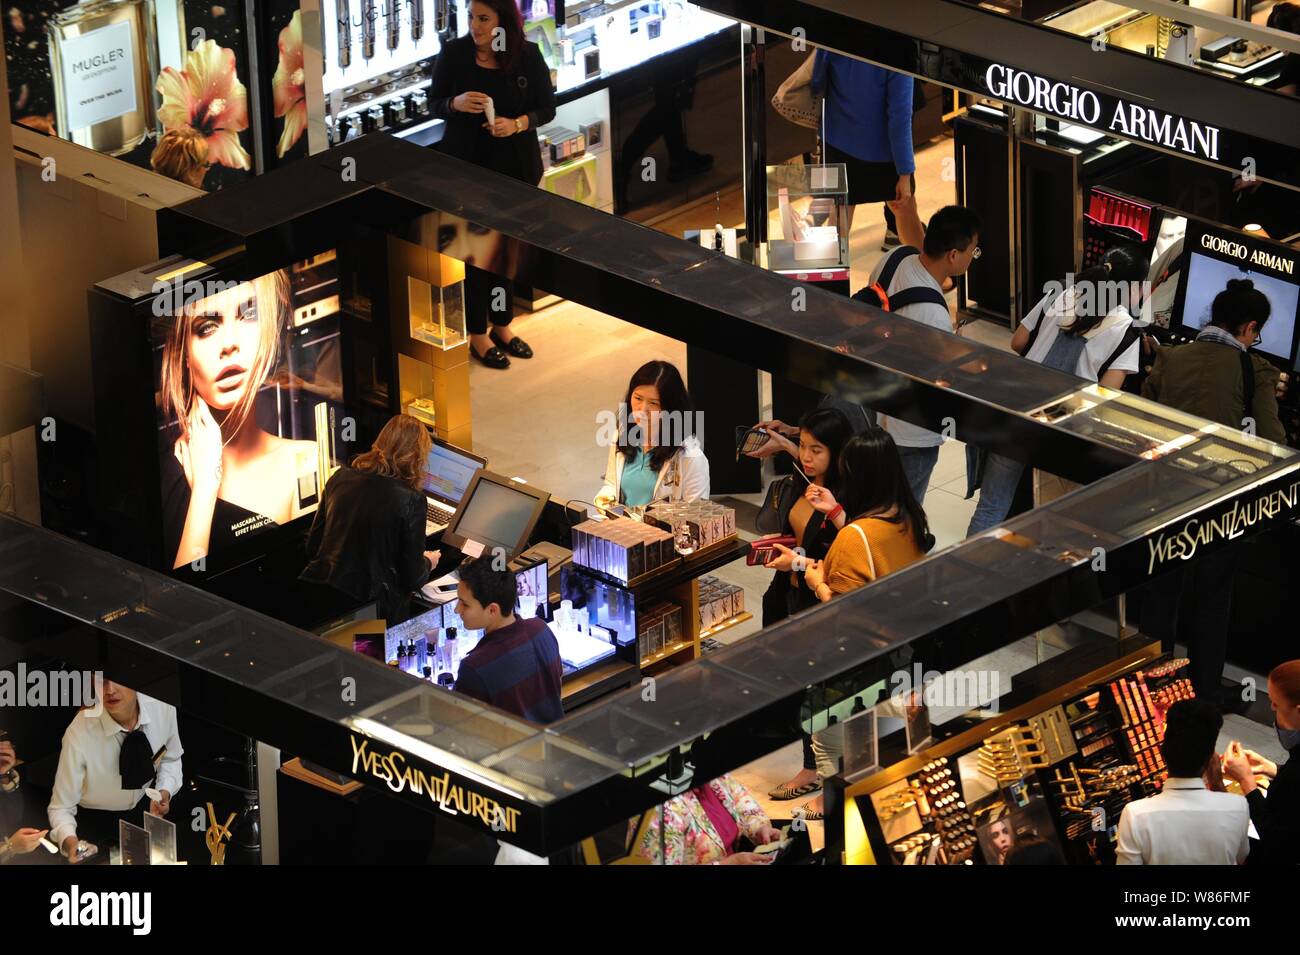 Giorgio Armani fashion luxury store in avenue Montaigne in Paris, France. –  Stock Editorial Photo © AndreaA. #275232298